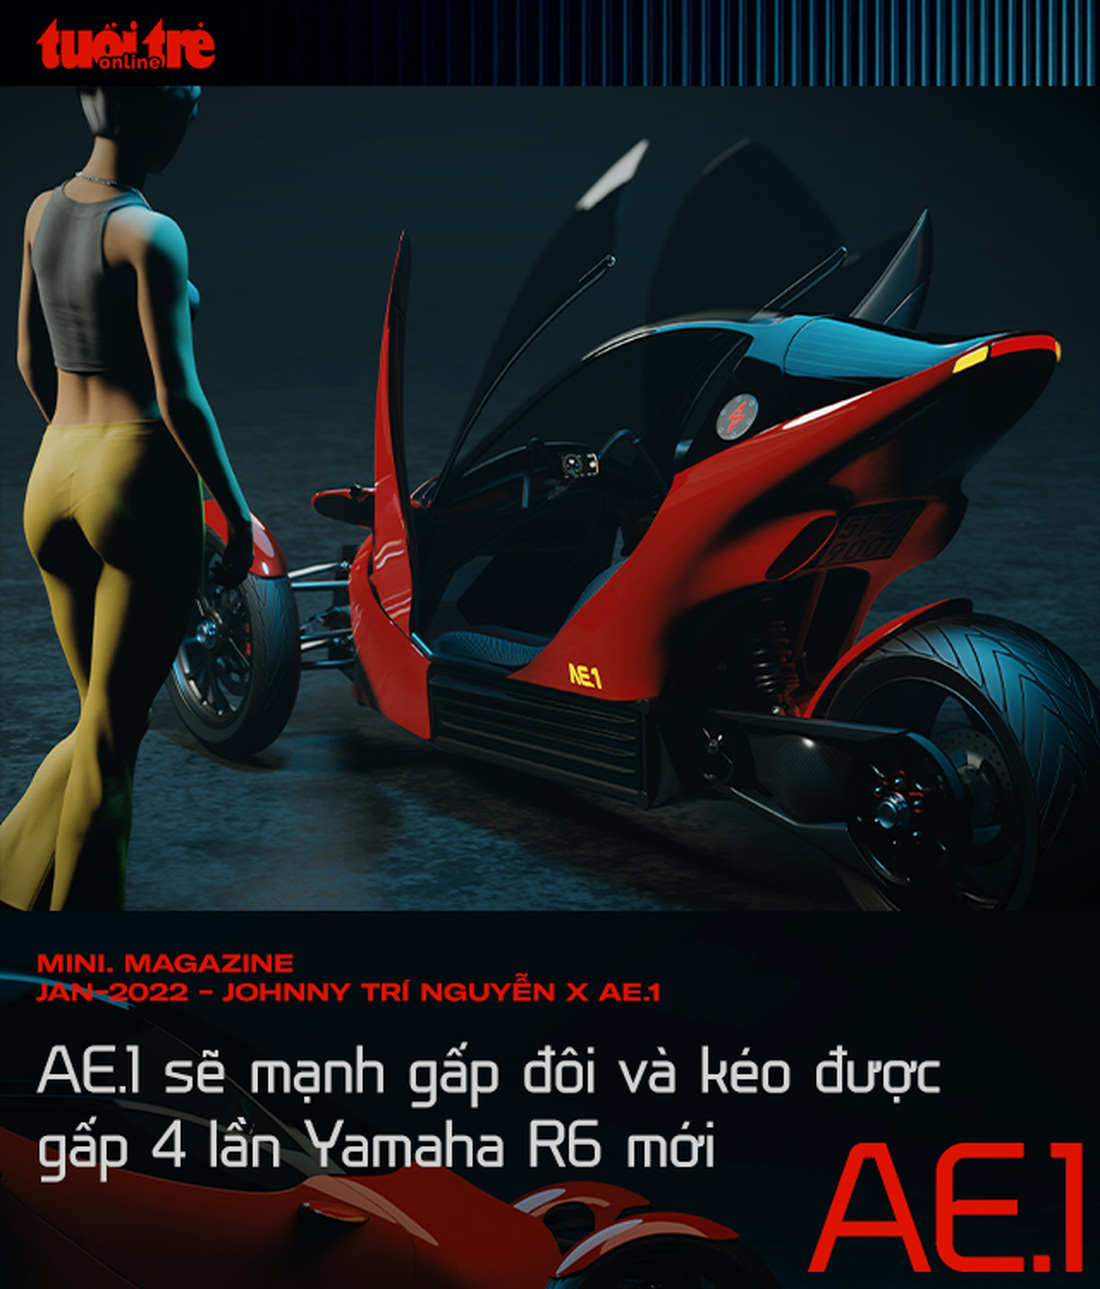 Johnny Trí Nguyễn 10 năm ngấm mùi Ducati và khao khát tạo xe 3 bánh độc nhất Việt Nam - Ảnh 11.